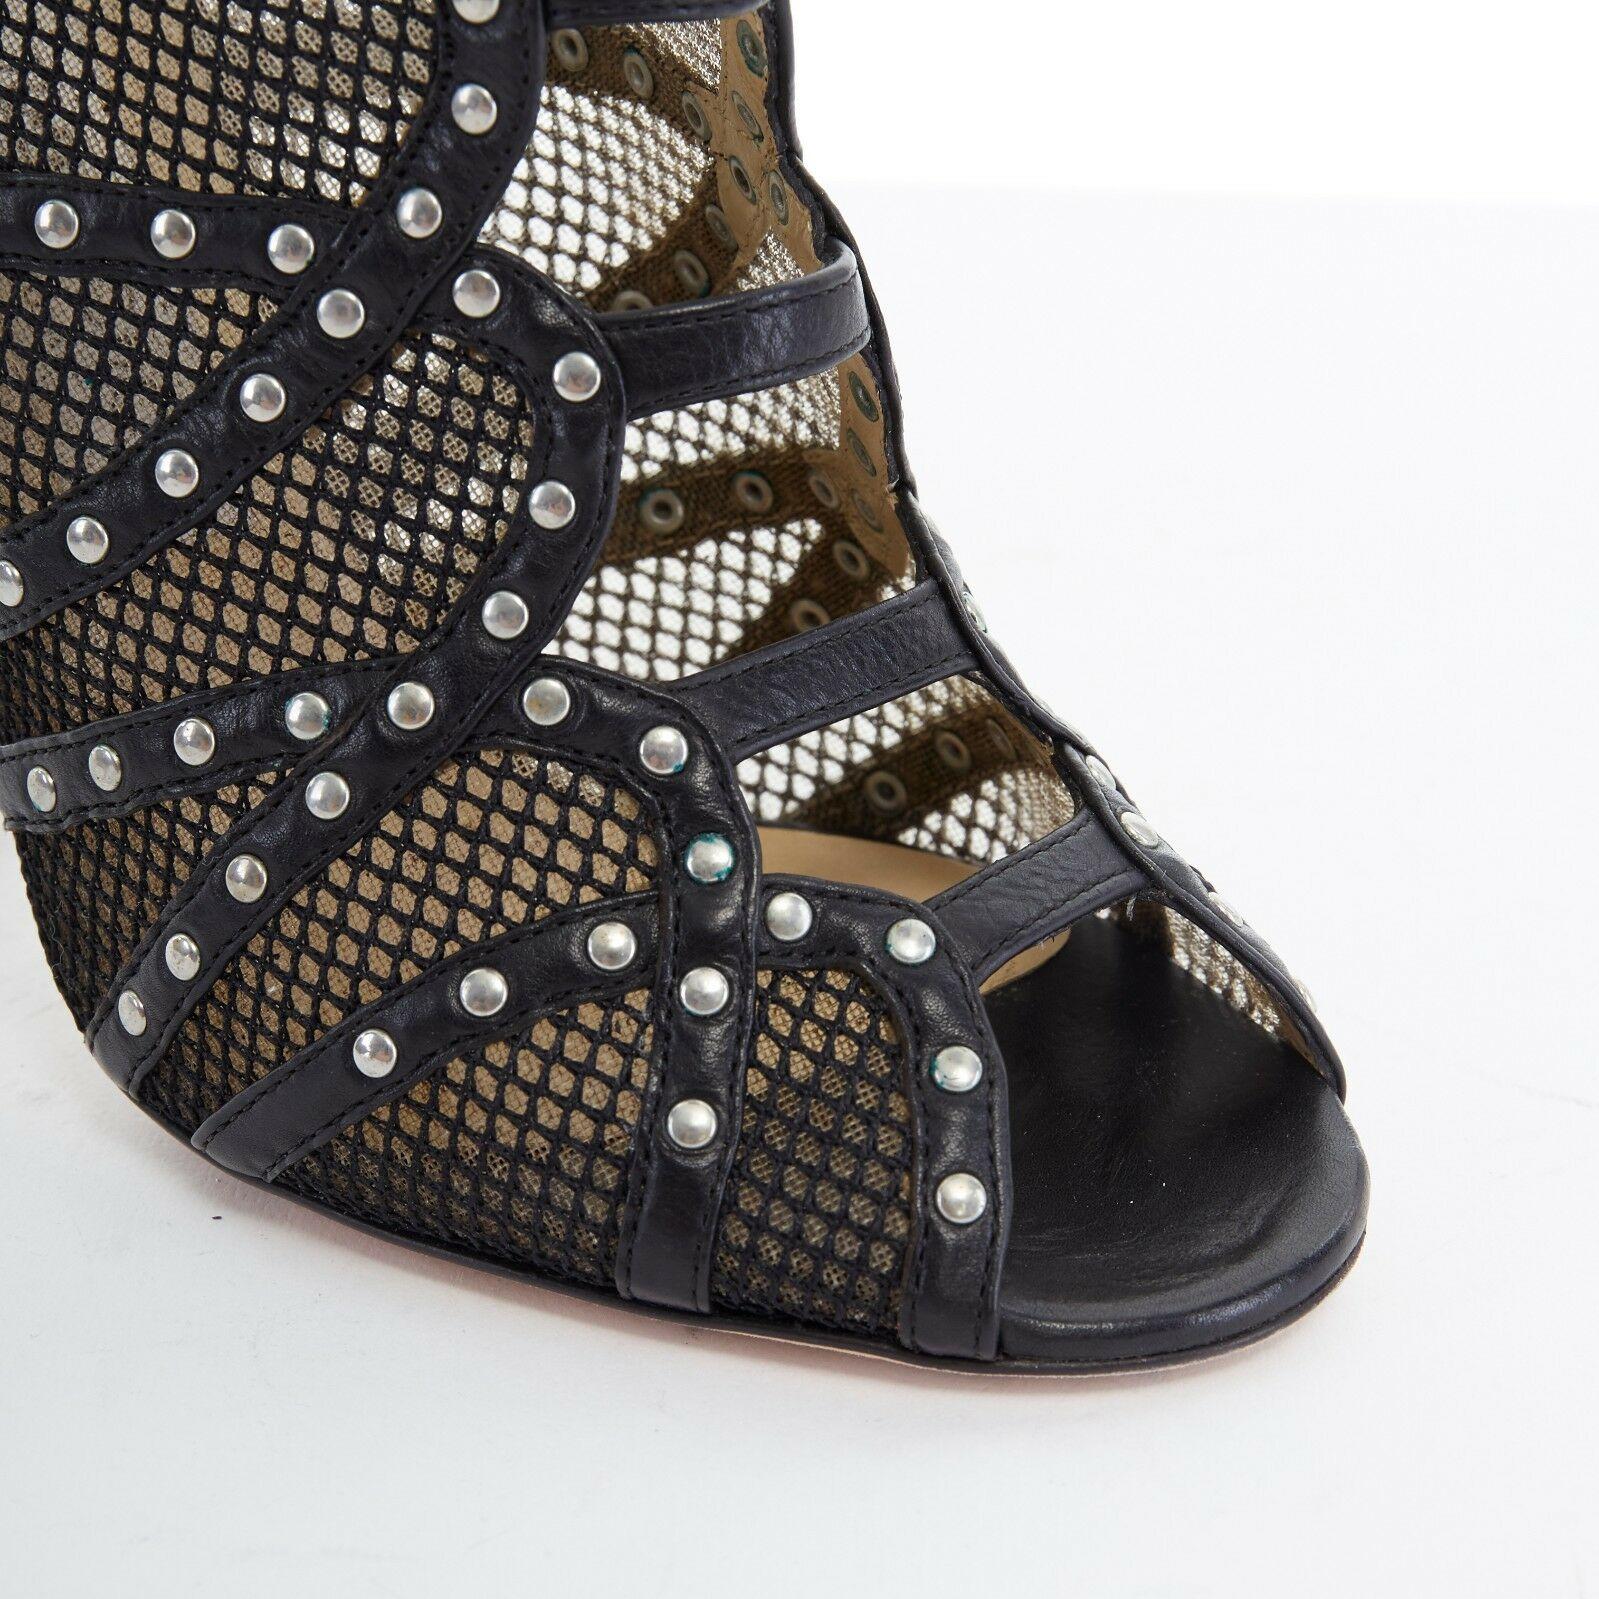 Women's JIMMY CHOO black fishnet mesh leather silver studded bootie heels EU37 US7 UK4